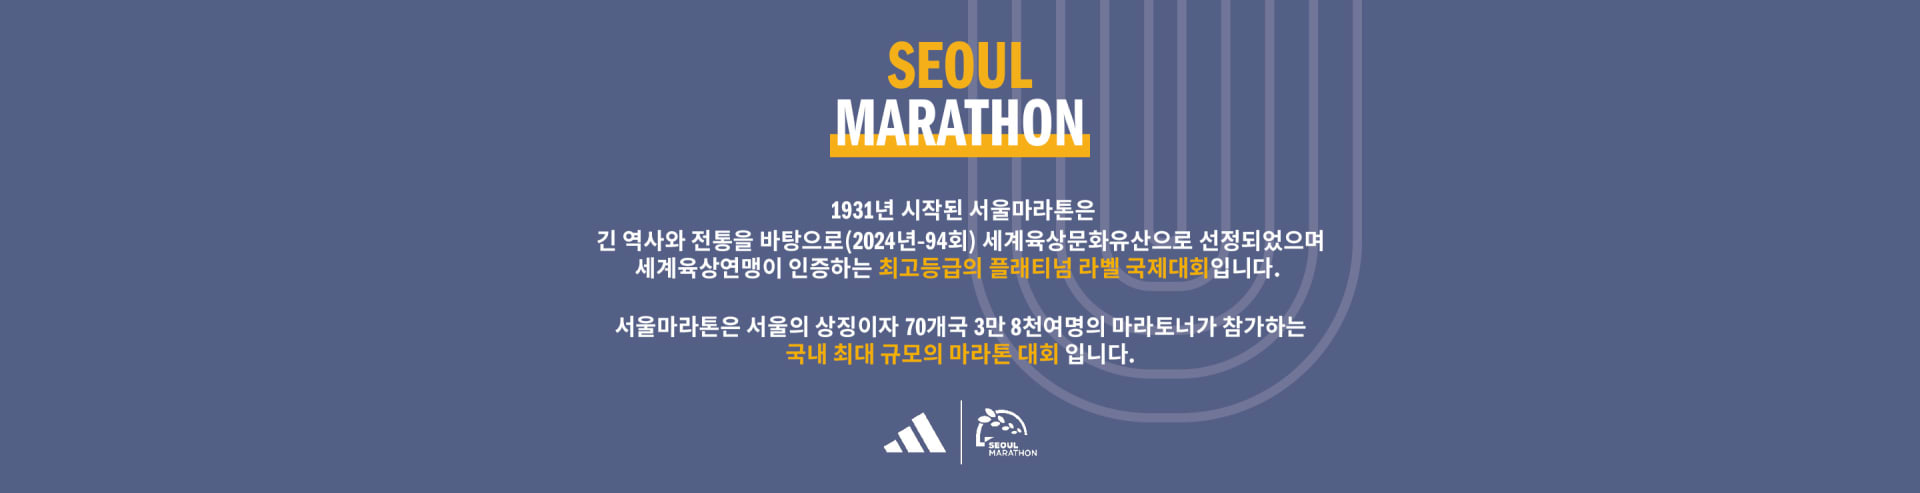 kr-adizero_seoul_marathon-running-ss24-launch-clp-statement-3-asset